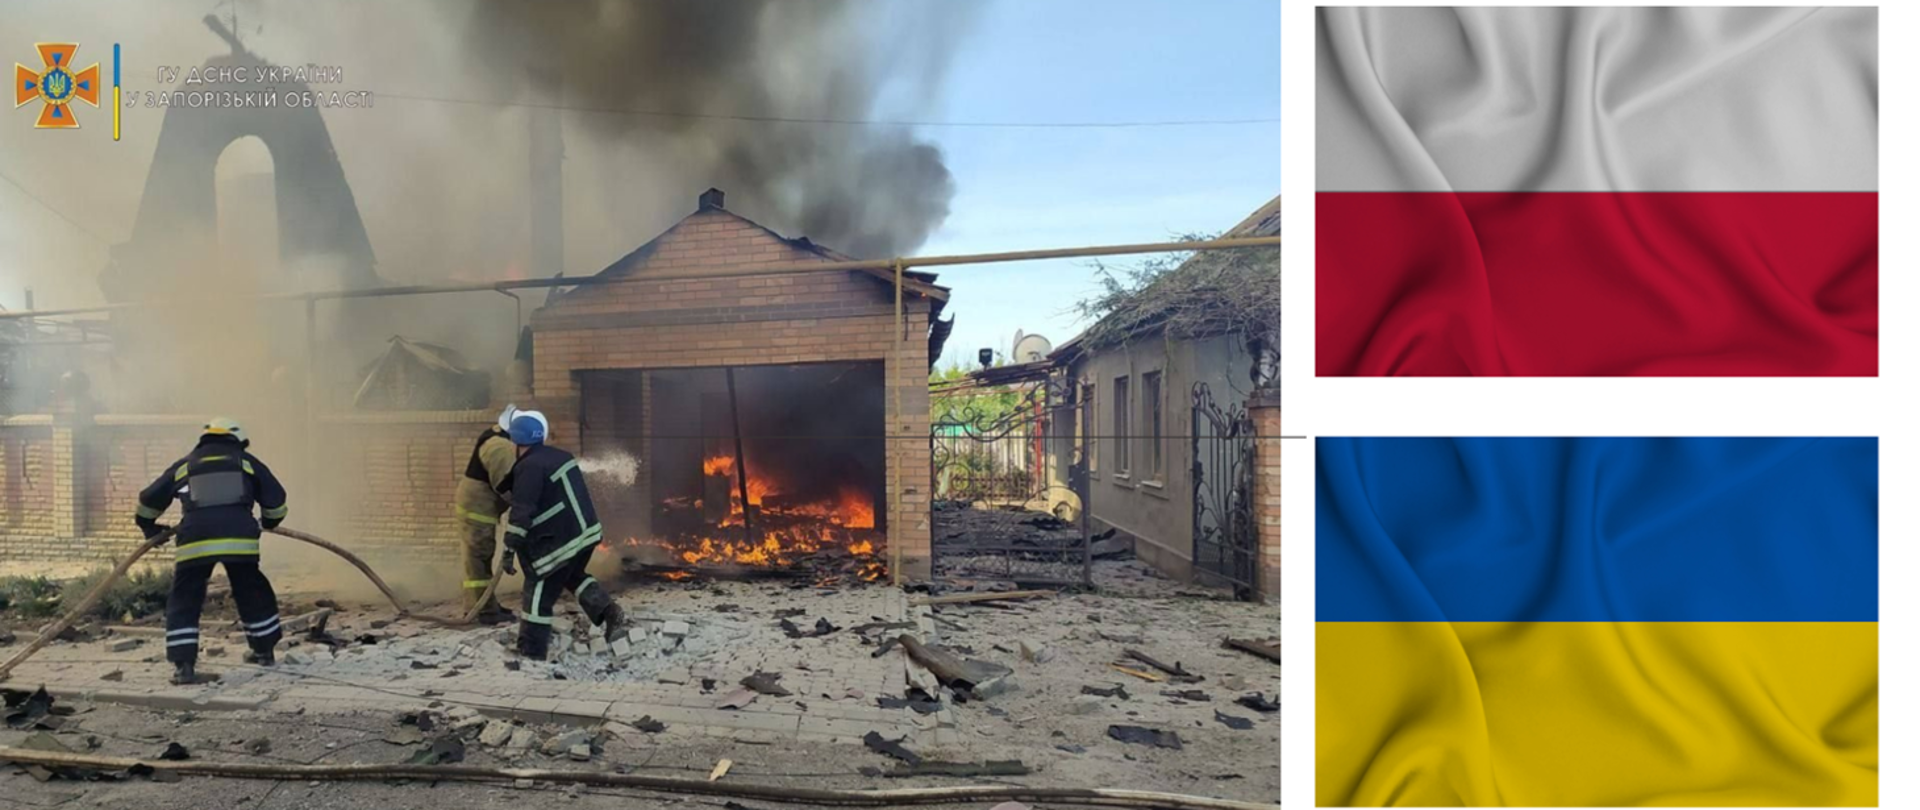 Po lewej stronie zdjęcie strażaków ukraińskich gaszących pożar, wokół zniszczone wojną budynki, po prawej flaga Polski u góry i flaga Ukrainy na dole